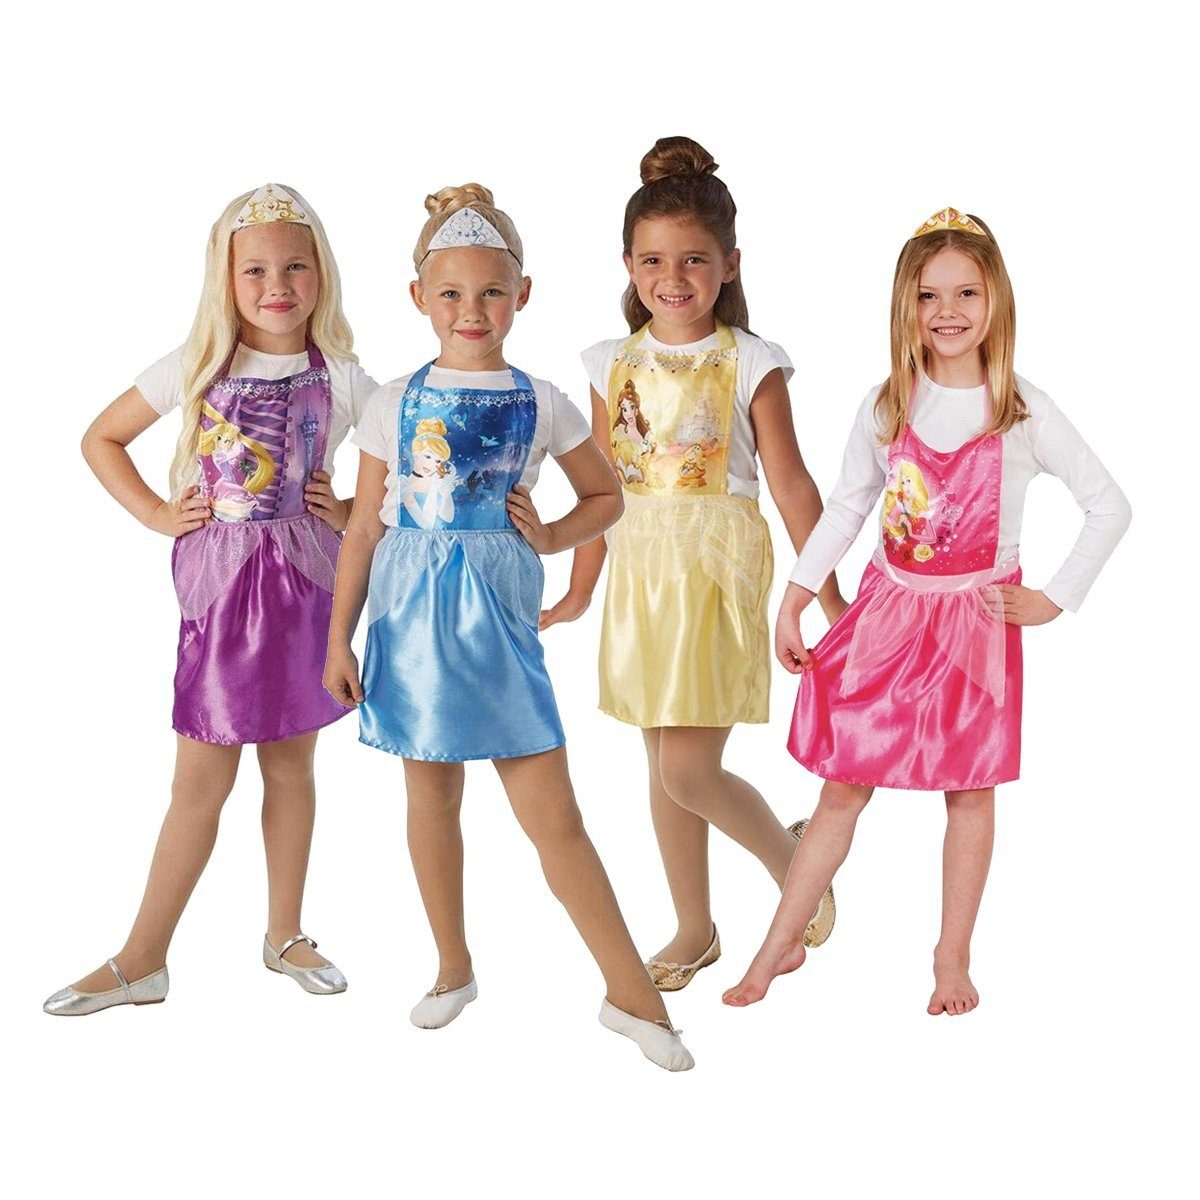 Metamorph Kostüm Disney Prinzessinnen Partypack für Mädchen - 4 Kin, Belle, Aurora, Rapunzel und Cinderella in einem günstigen Set - ideal